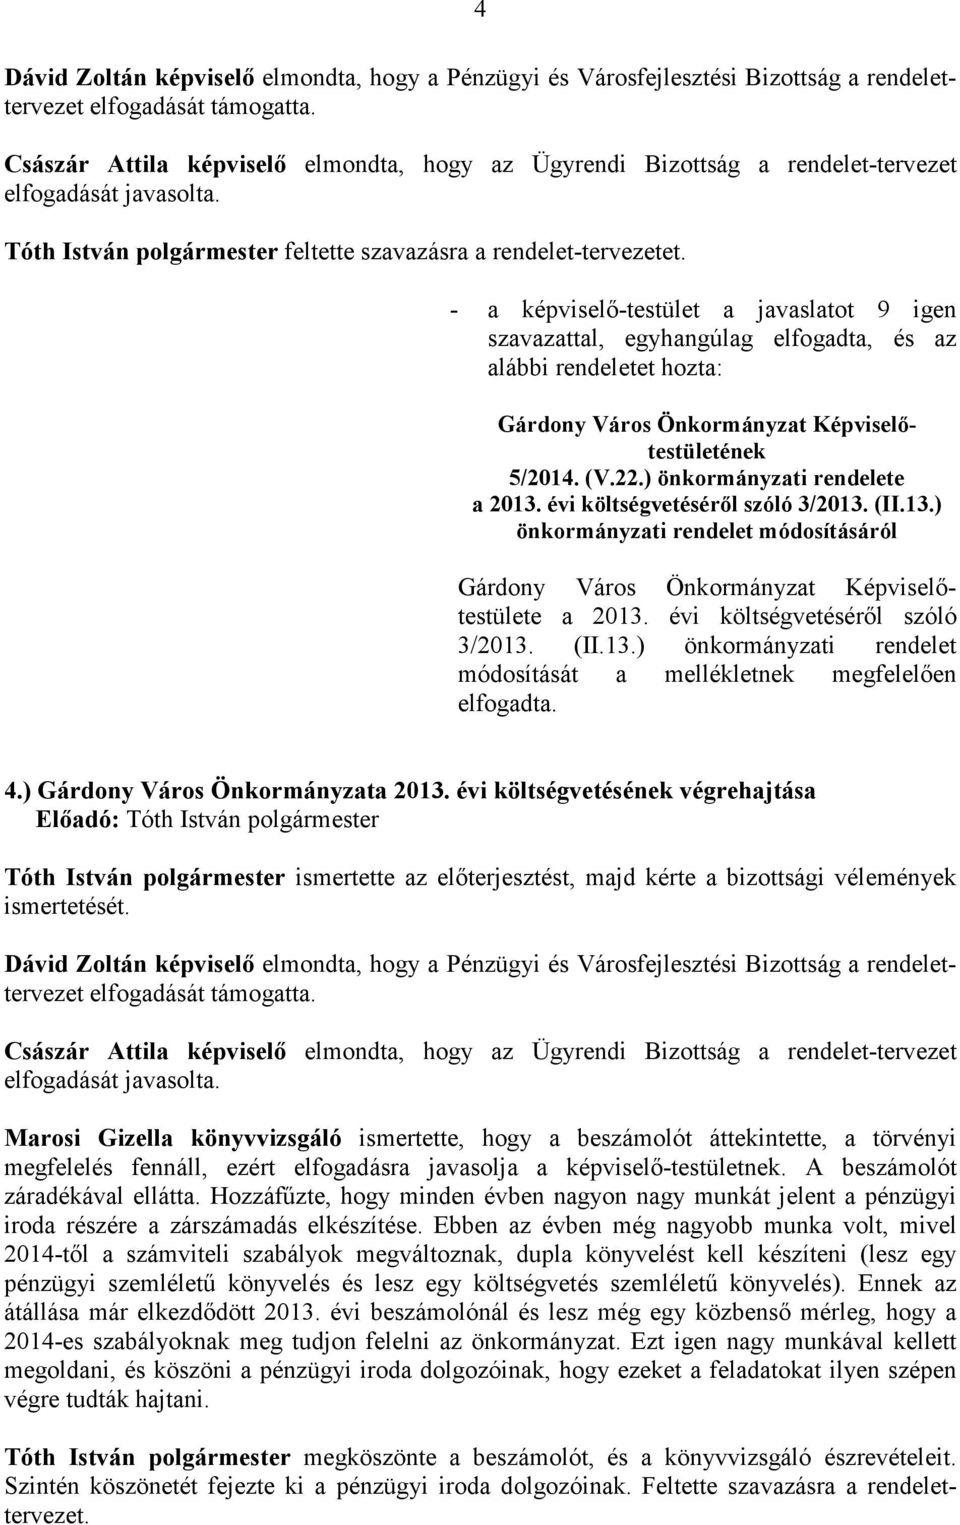 alábbi rendeletet hozta: Gárdony Város Önkormányzat Képviselıtestületének 5/2014. (V.22.) önkormányzati rendelete a 2013. évi költségvetésérıl szóló 3/2013. (II.13.) önkormányzati rendelet módosításáról a 2013.